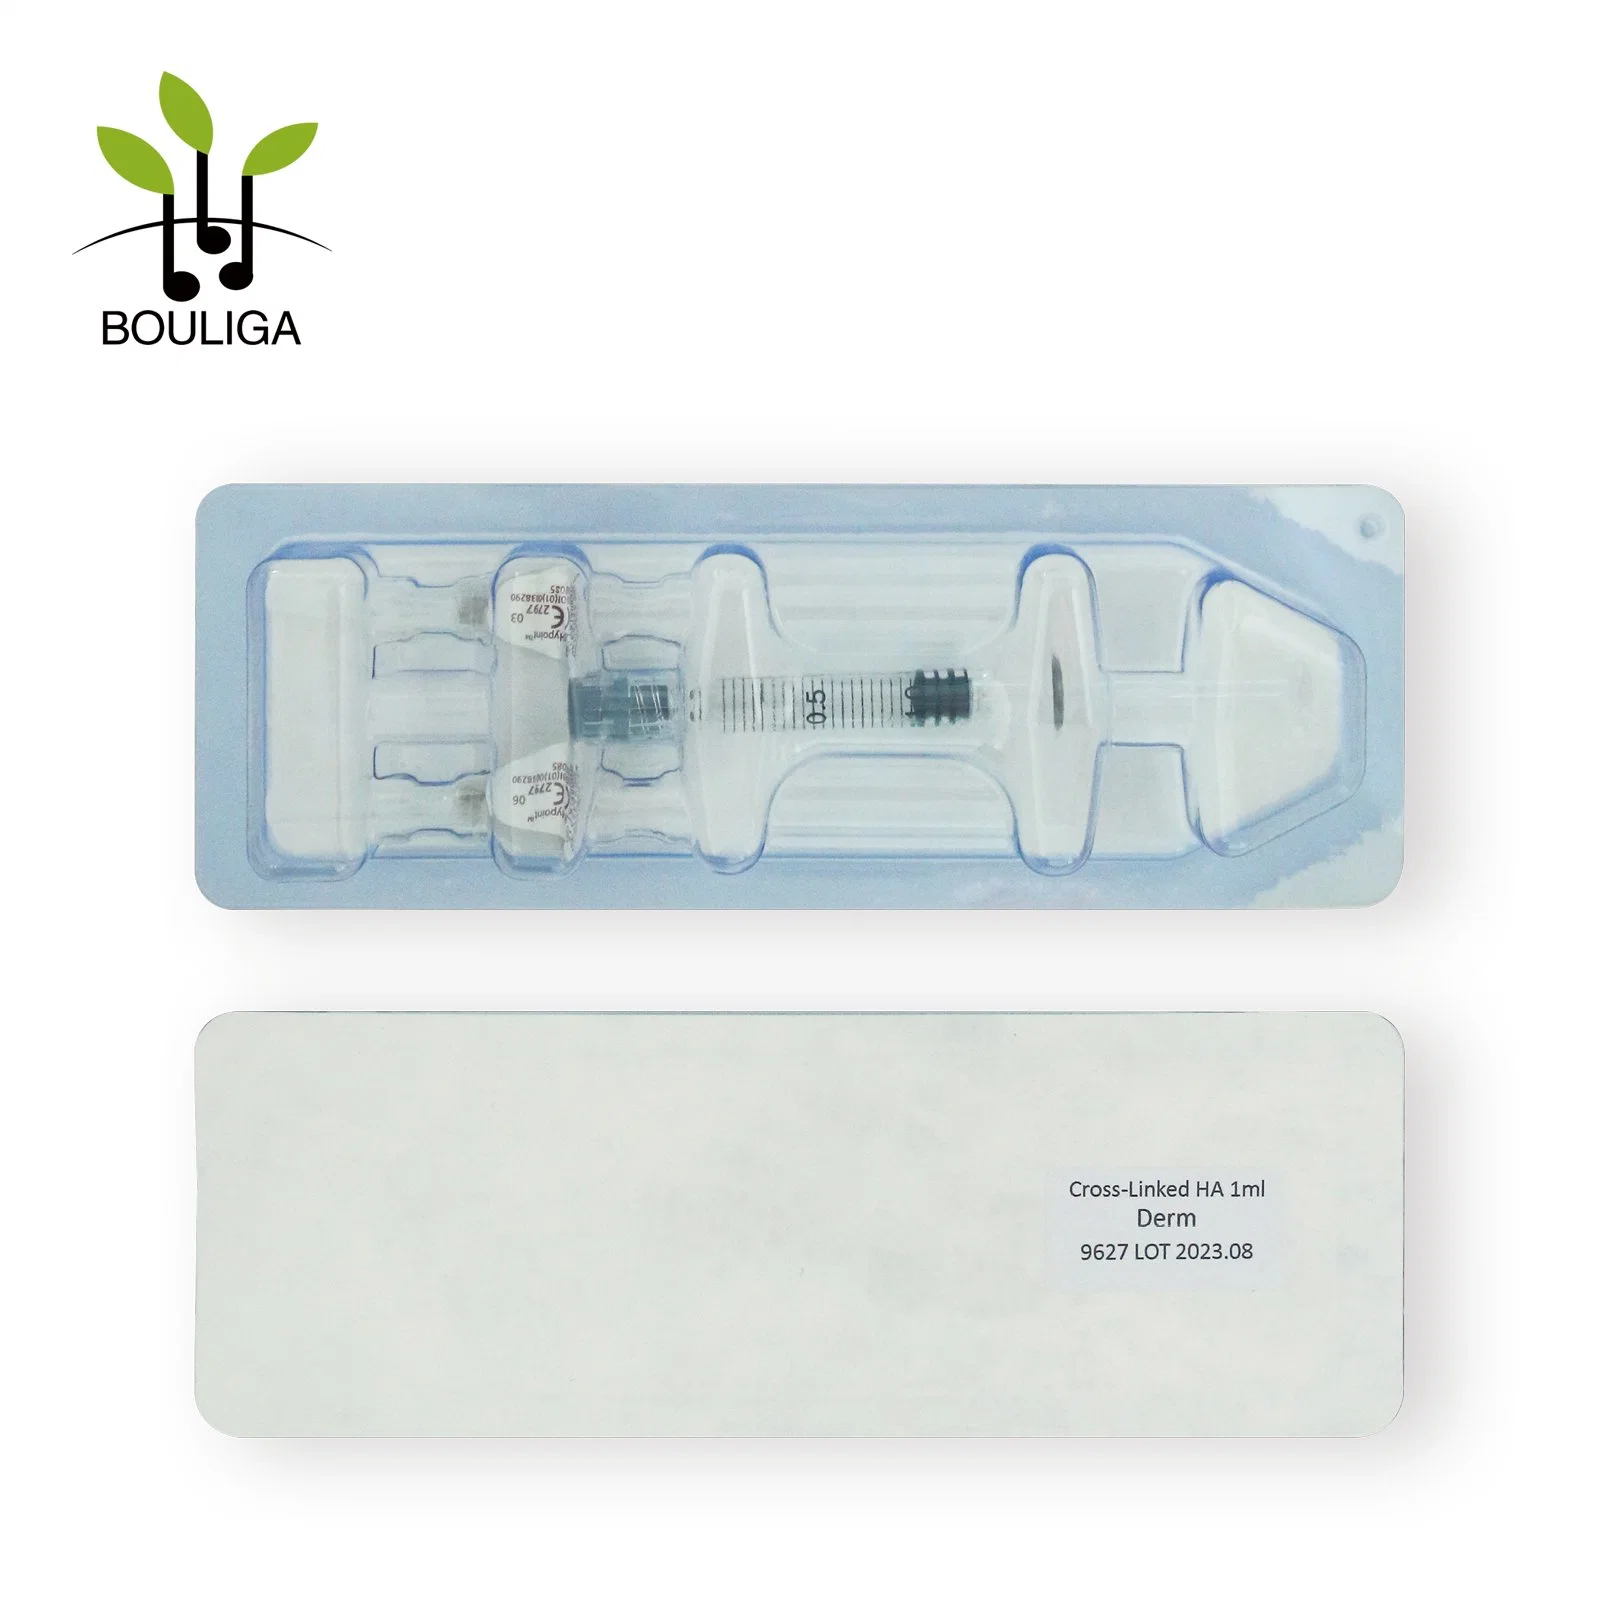 Bouliga Academy Productos Cross Linked Injectable Hyaluronic Acid Dermal Filler 1ml llenadora de ha segura y duradera